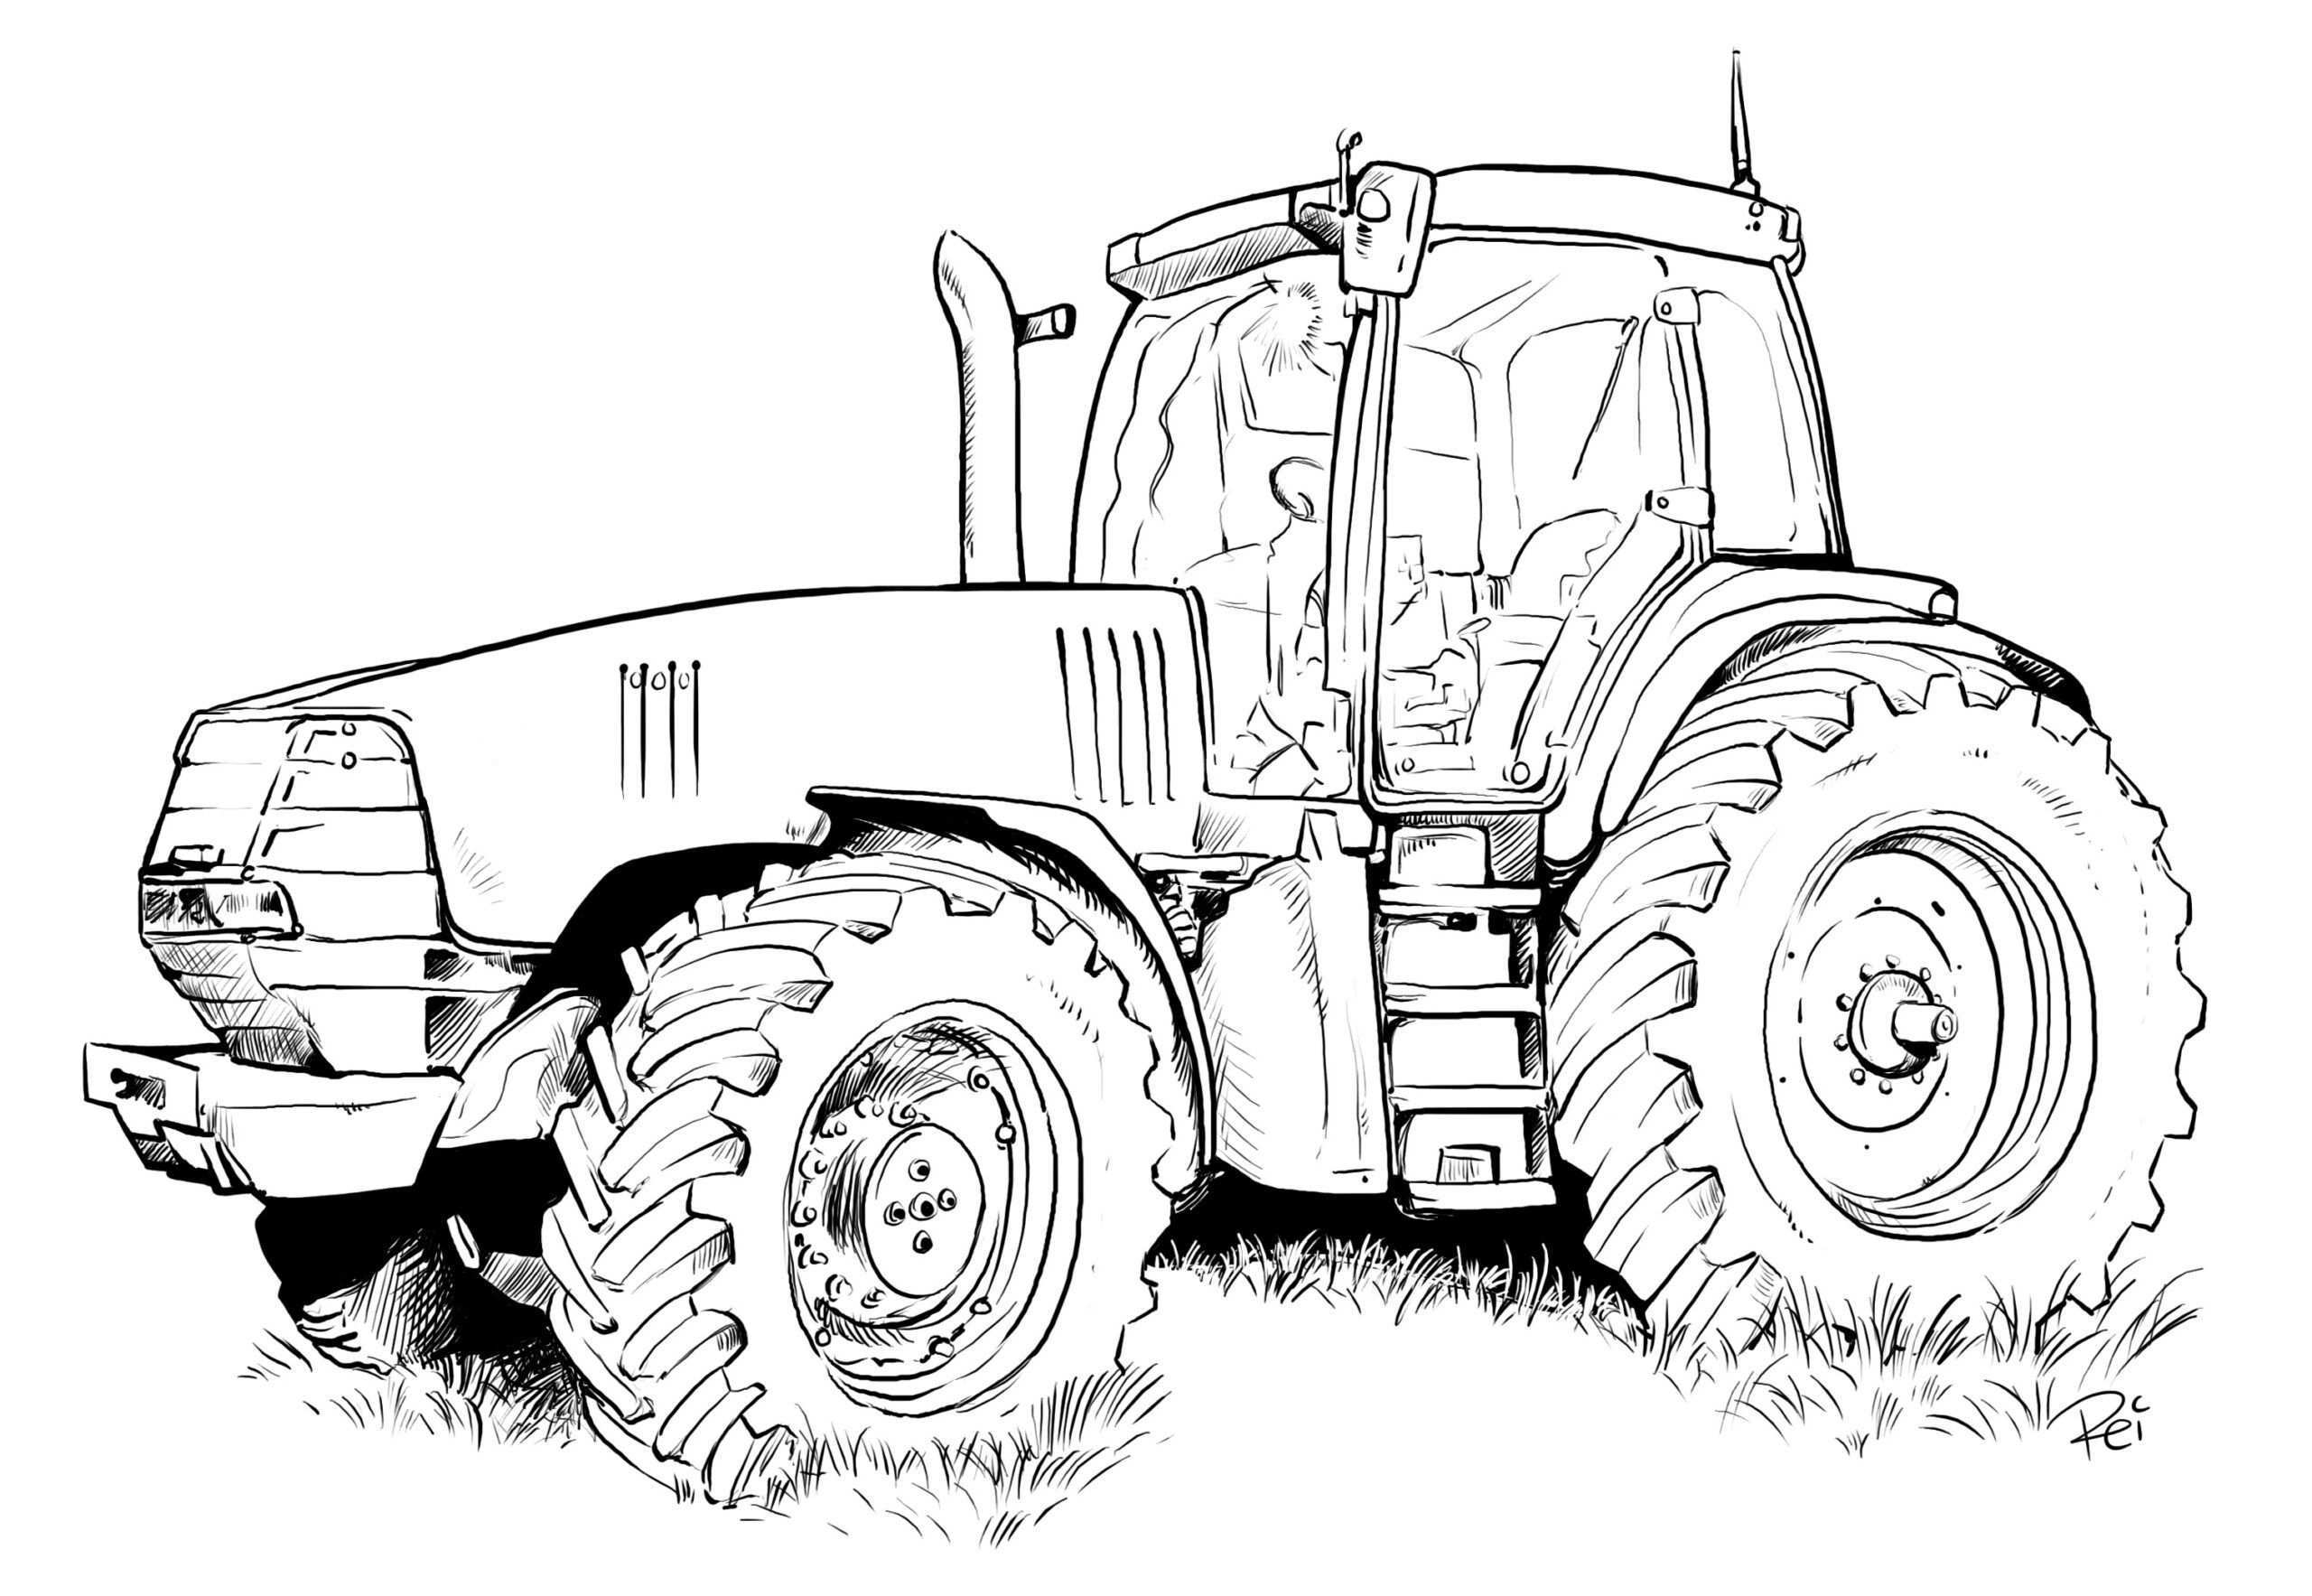 10 Gut Traktor Malvorlage Idee 2020 In 2020 Ausmalbilder Ausmalbilder Traktor Traktor Bild